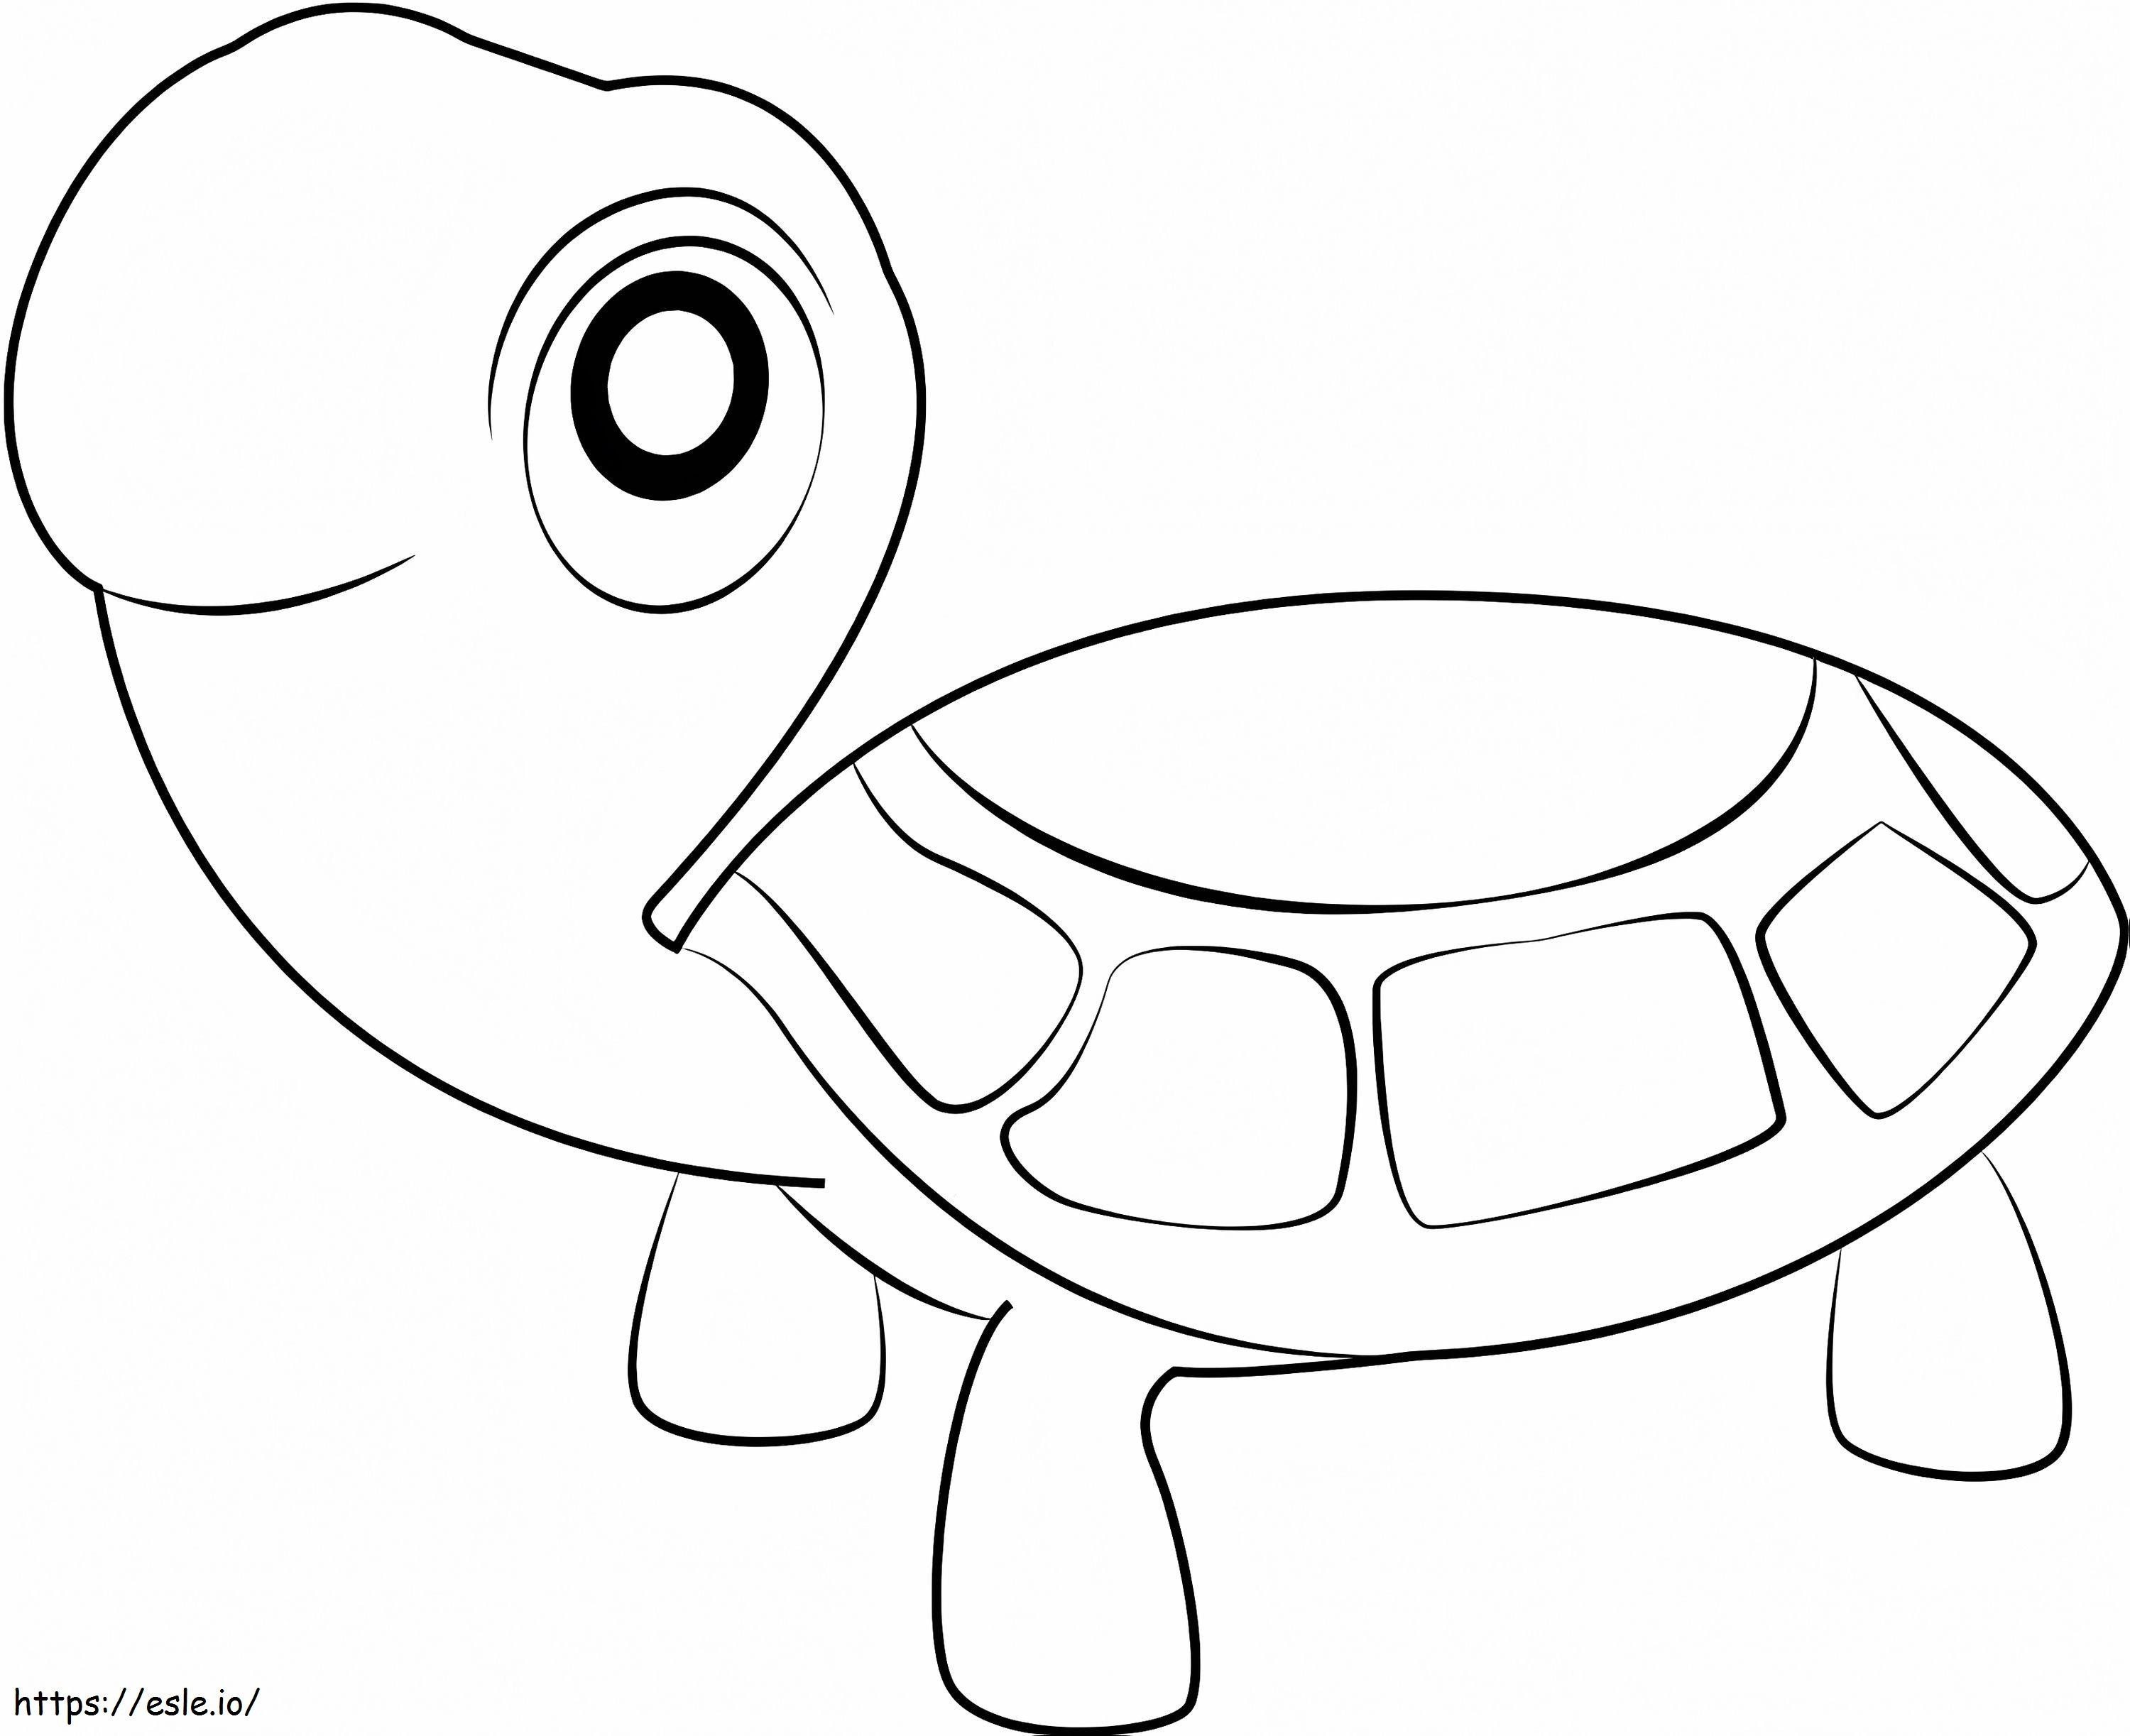 Tartaruga sorridente para colorir